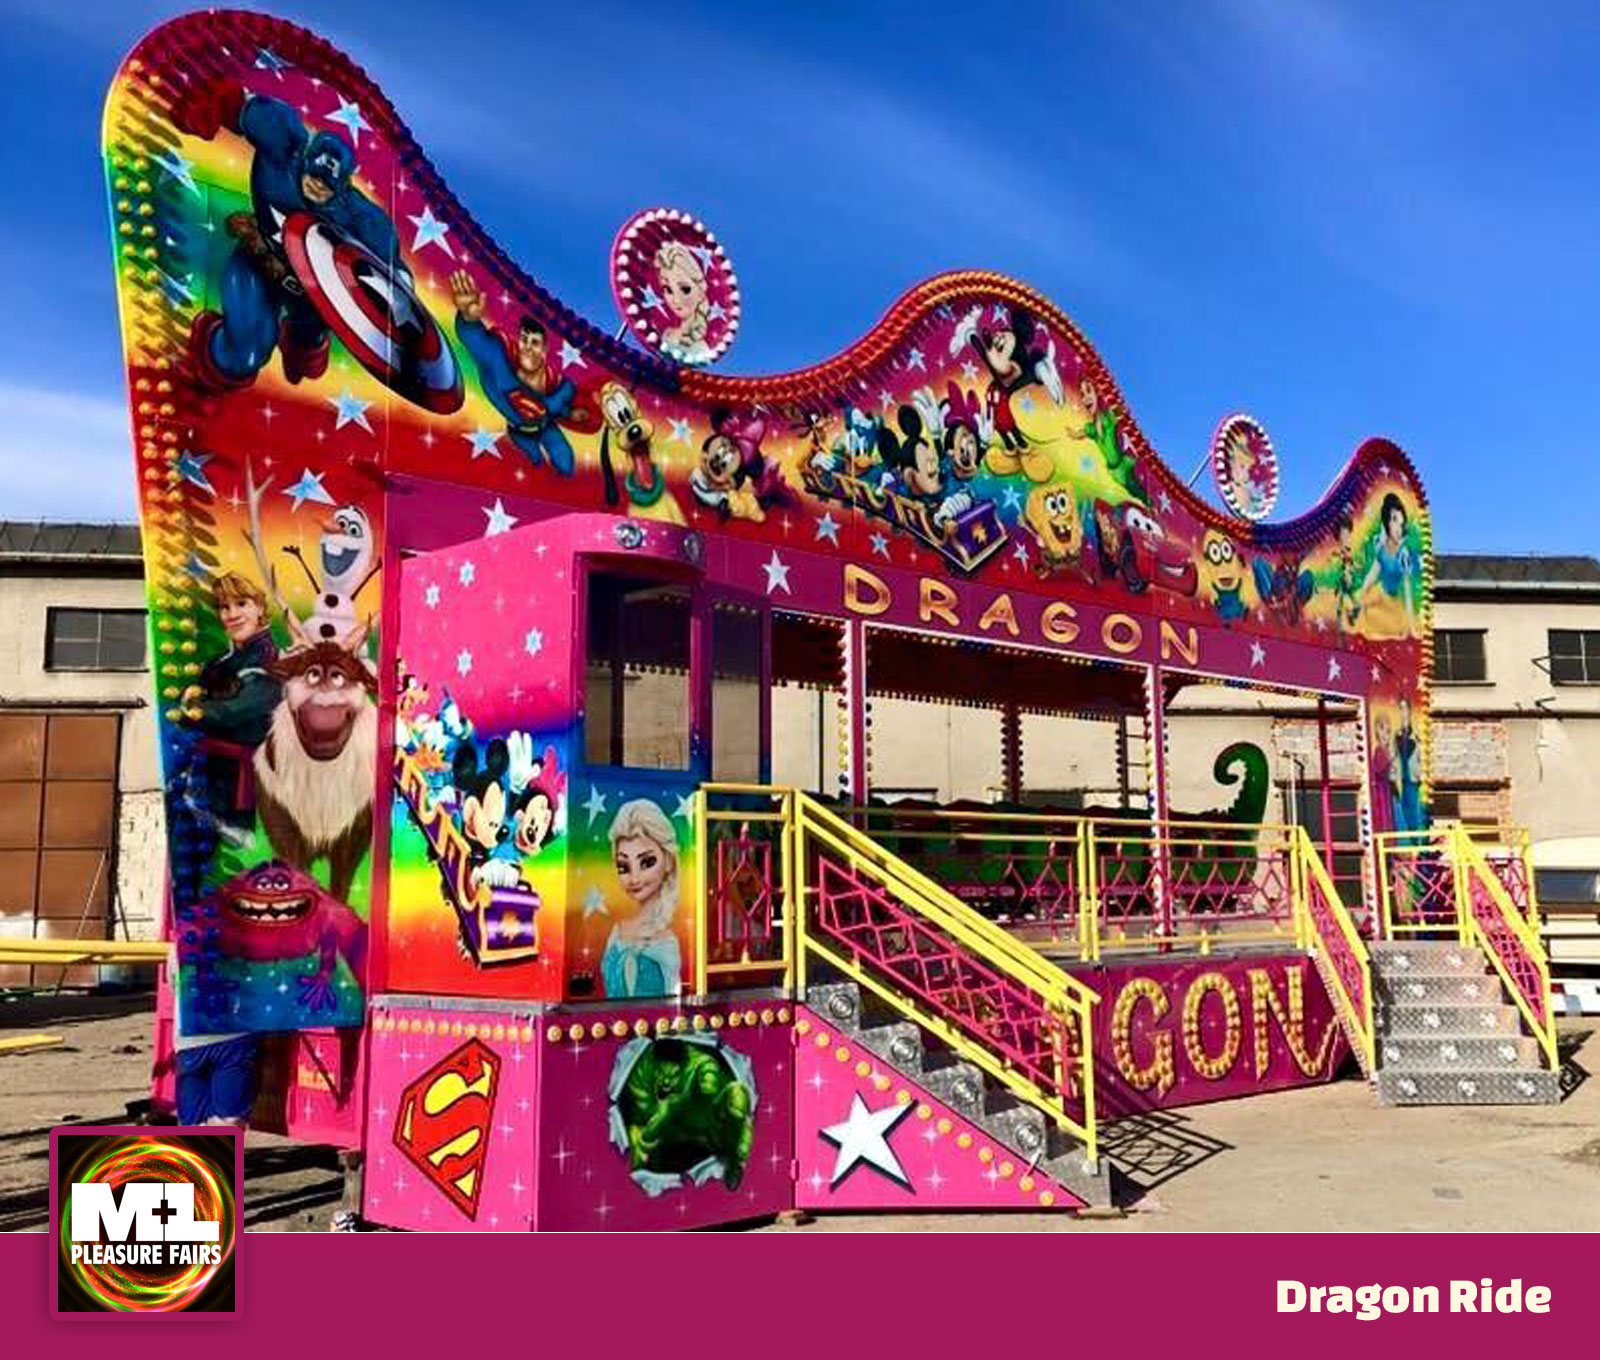 Dragon Ride | M&L Pleasure Fairs